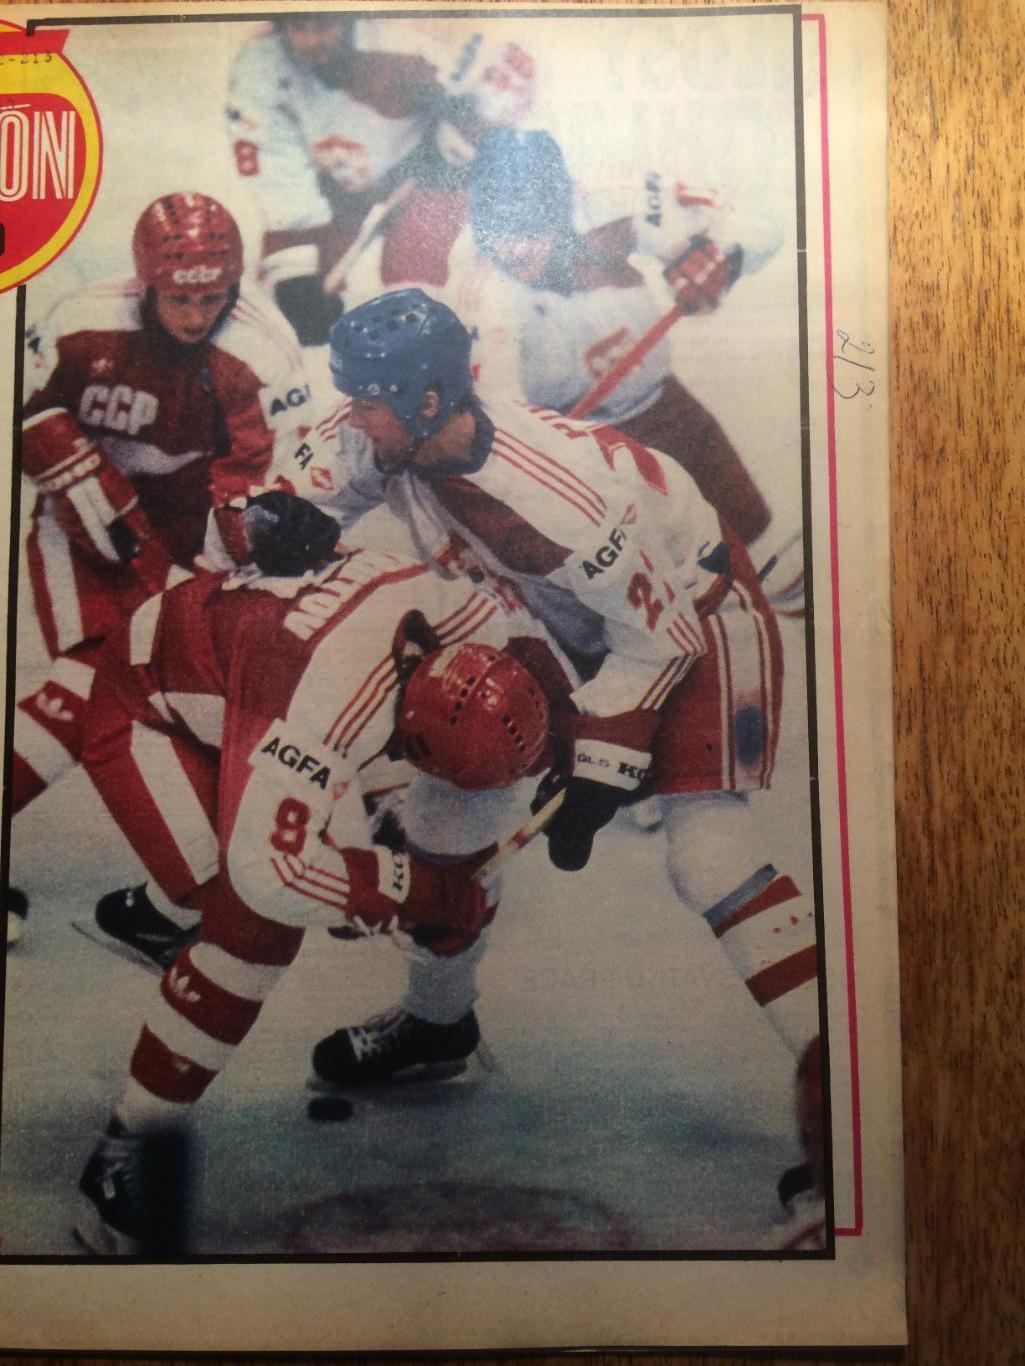 Журнал Стадион № 20 1986 Хоккей (ЧМ-86 Москва) постер СССР